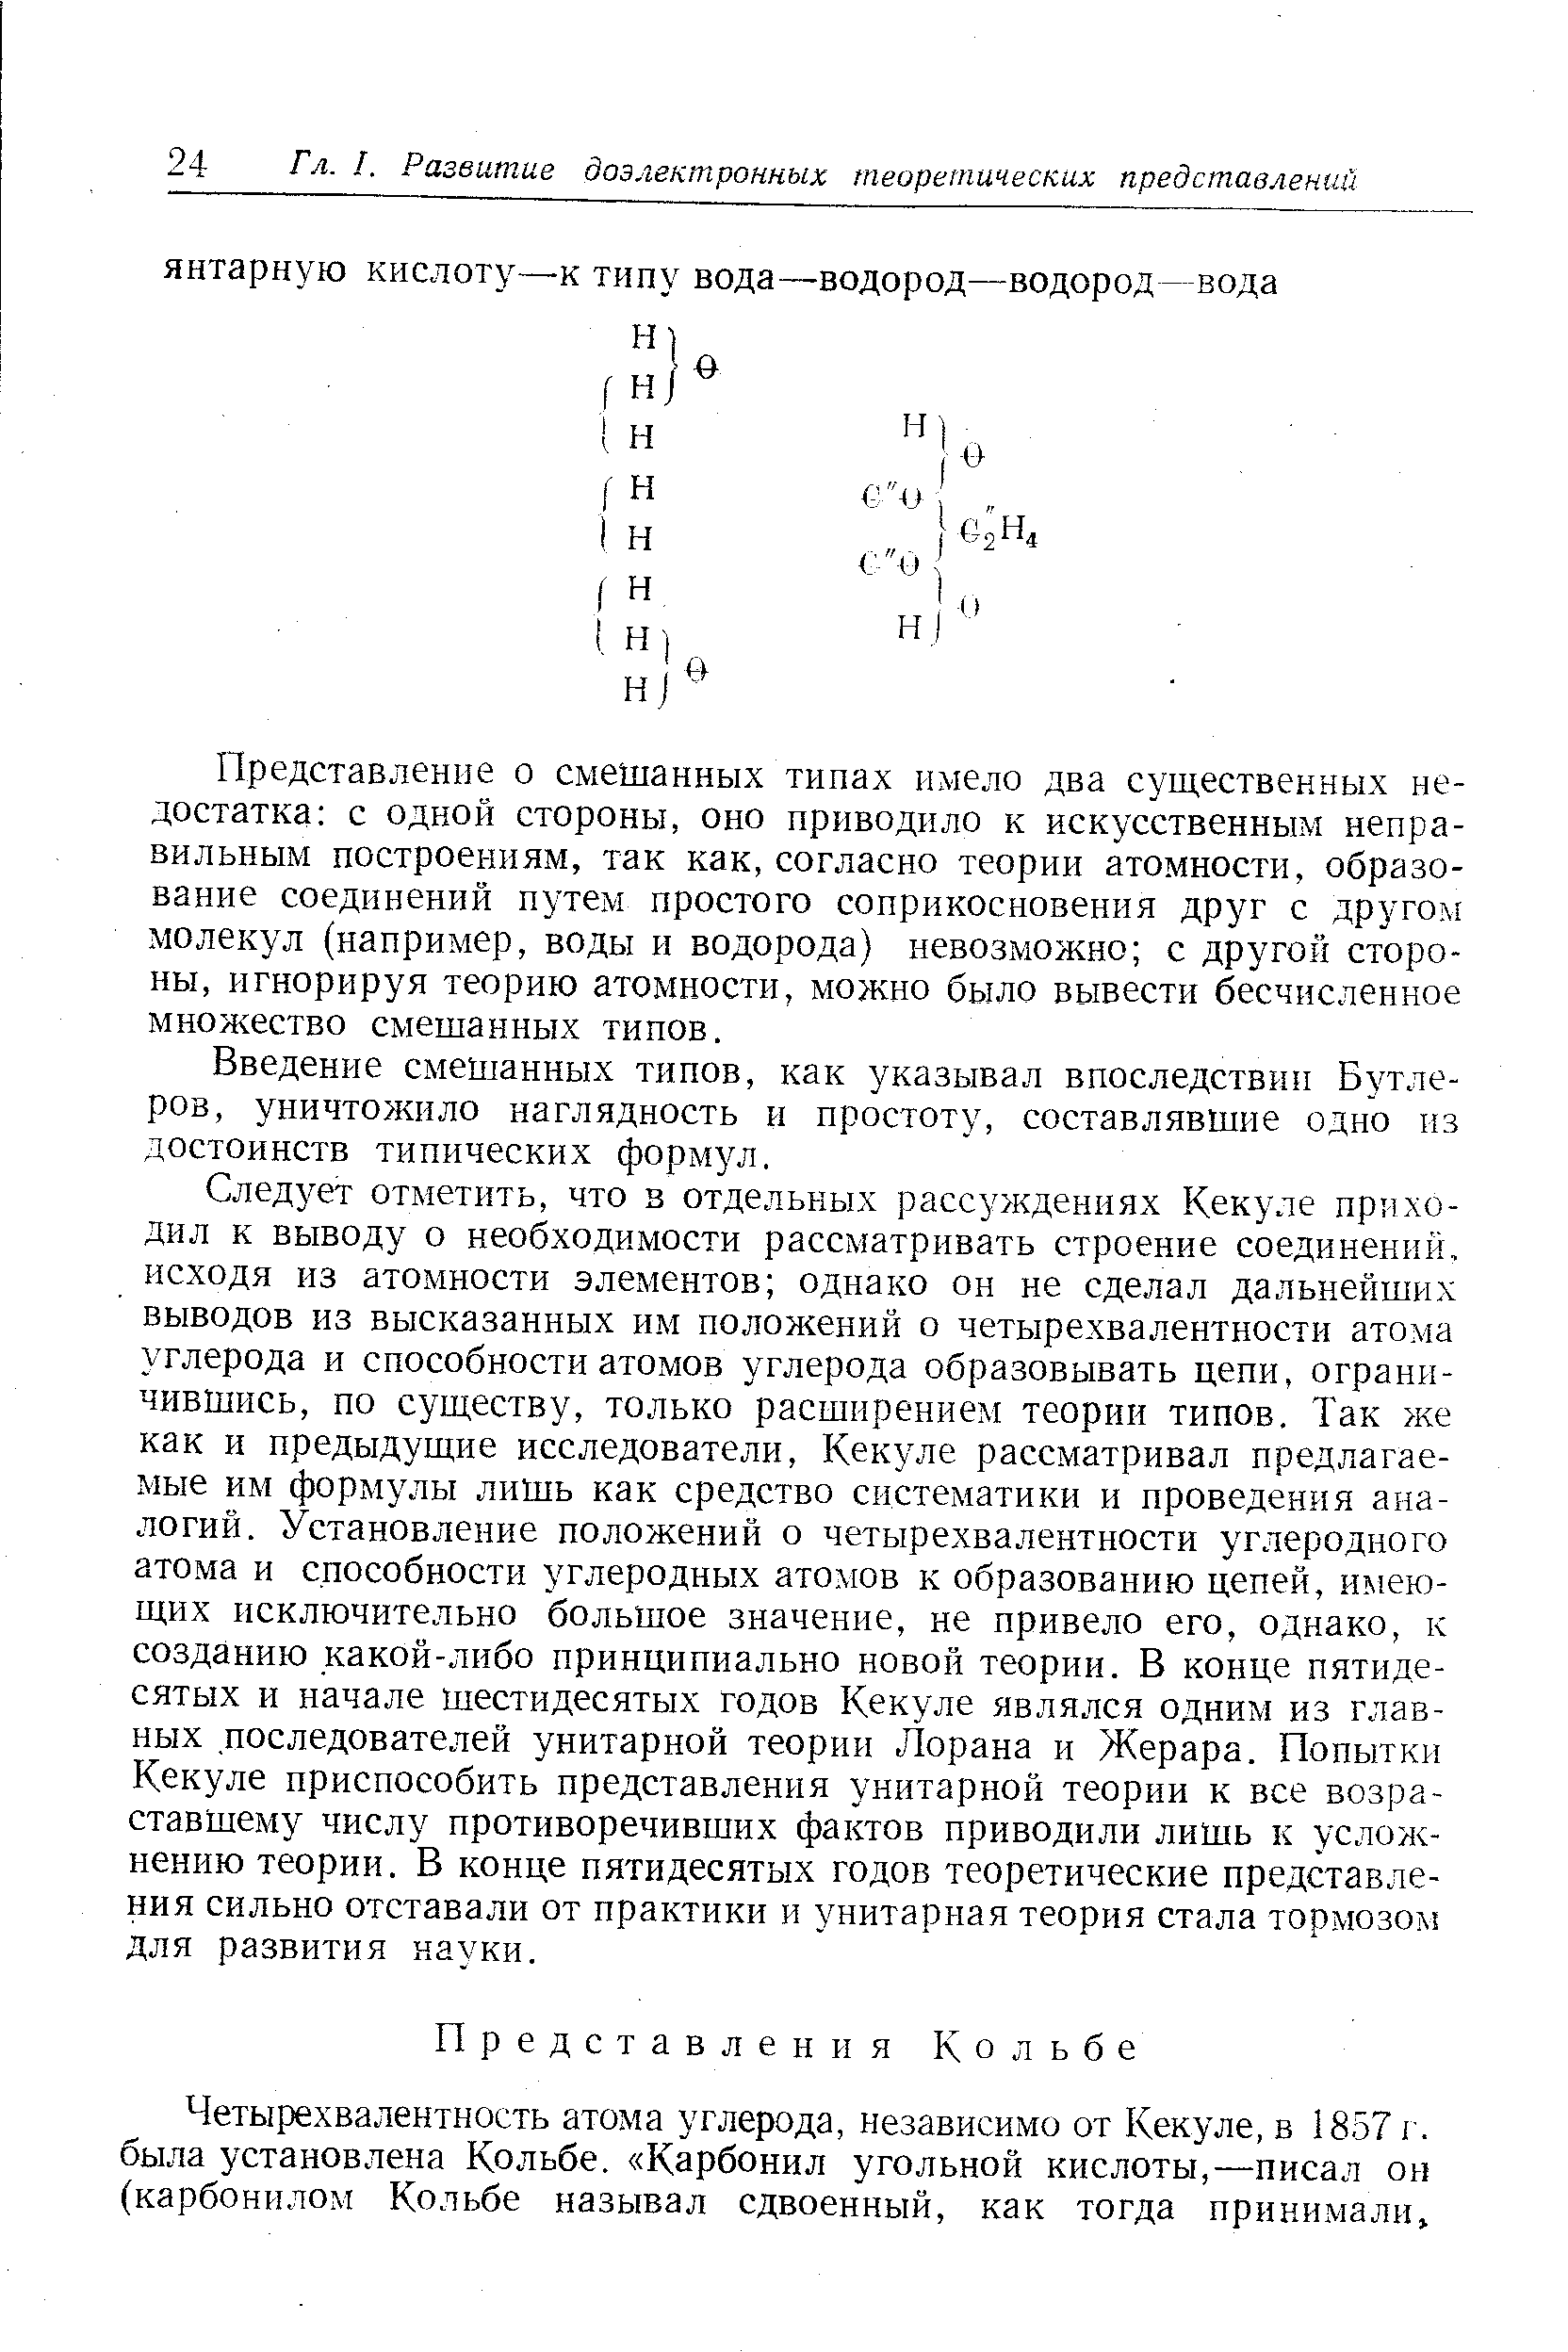 Четырехвалентность атома углерода, независимо от Кекуле, в 1857 г. была установлена Кольбе. Карбонил угольной кислоты,—писал он (карбонилом Кольбе называл сдвоенный, как тогда принимали.